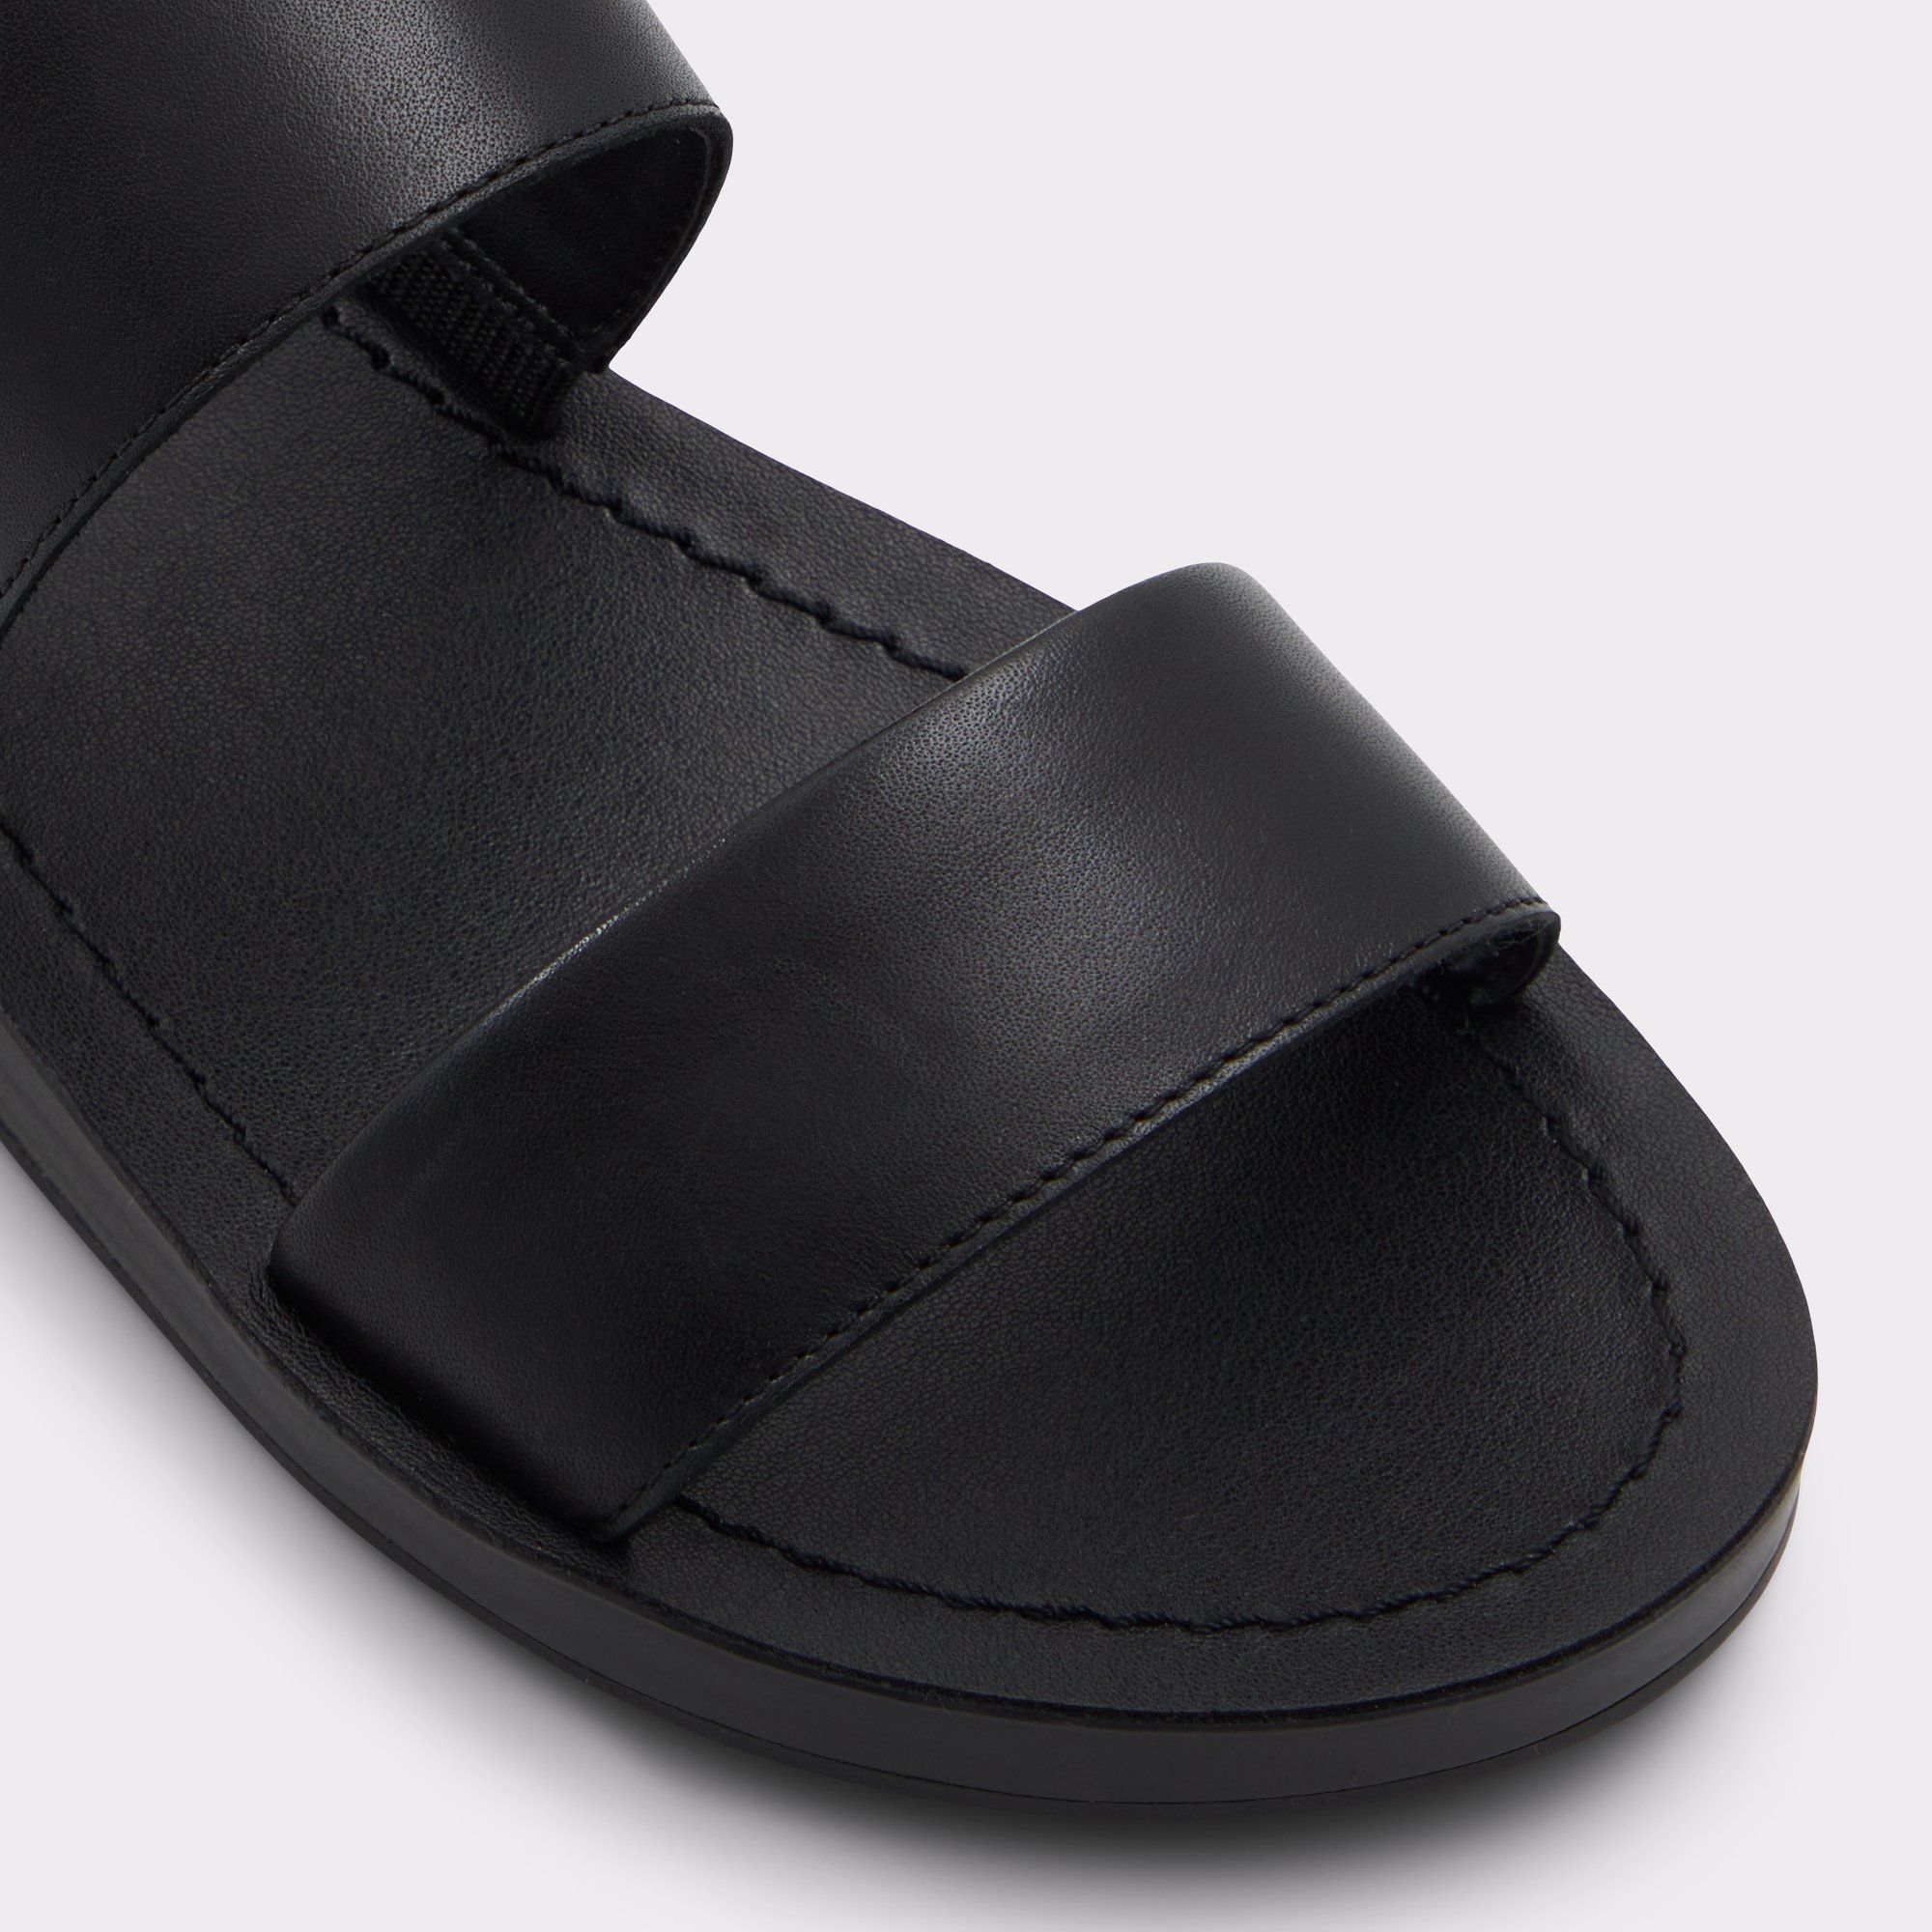 Bamaever Black Women's Flat Sandals | ALDO US